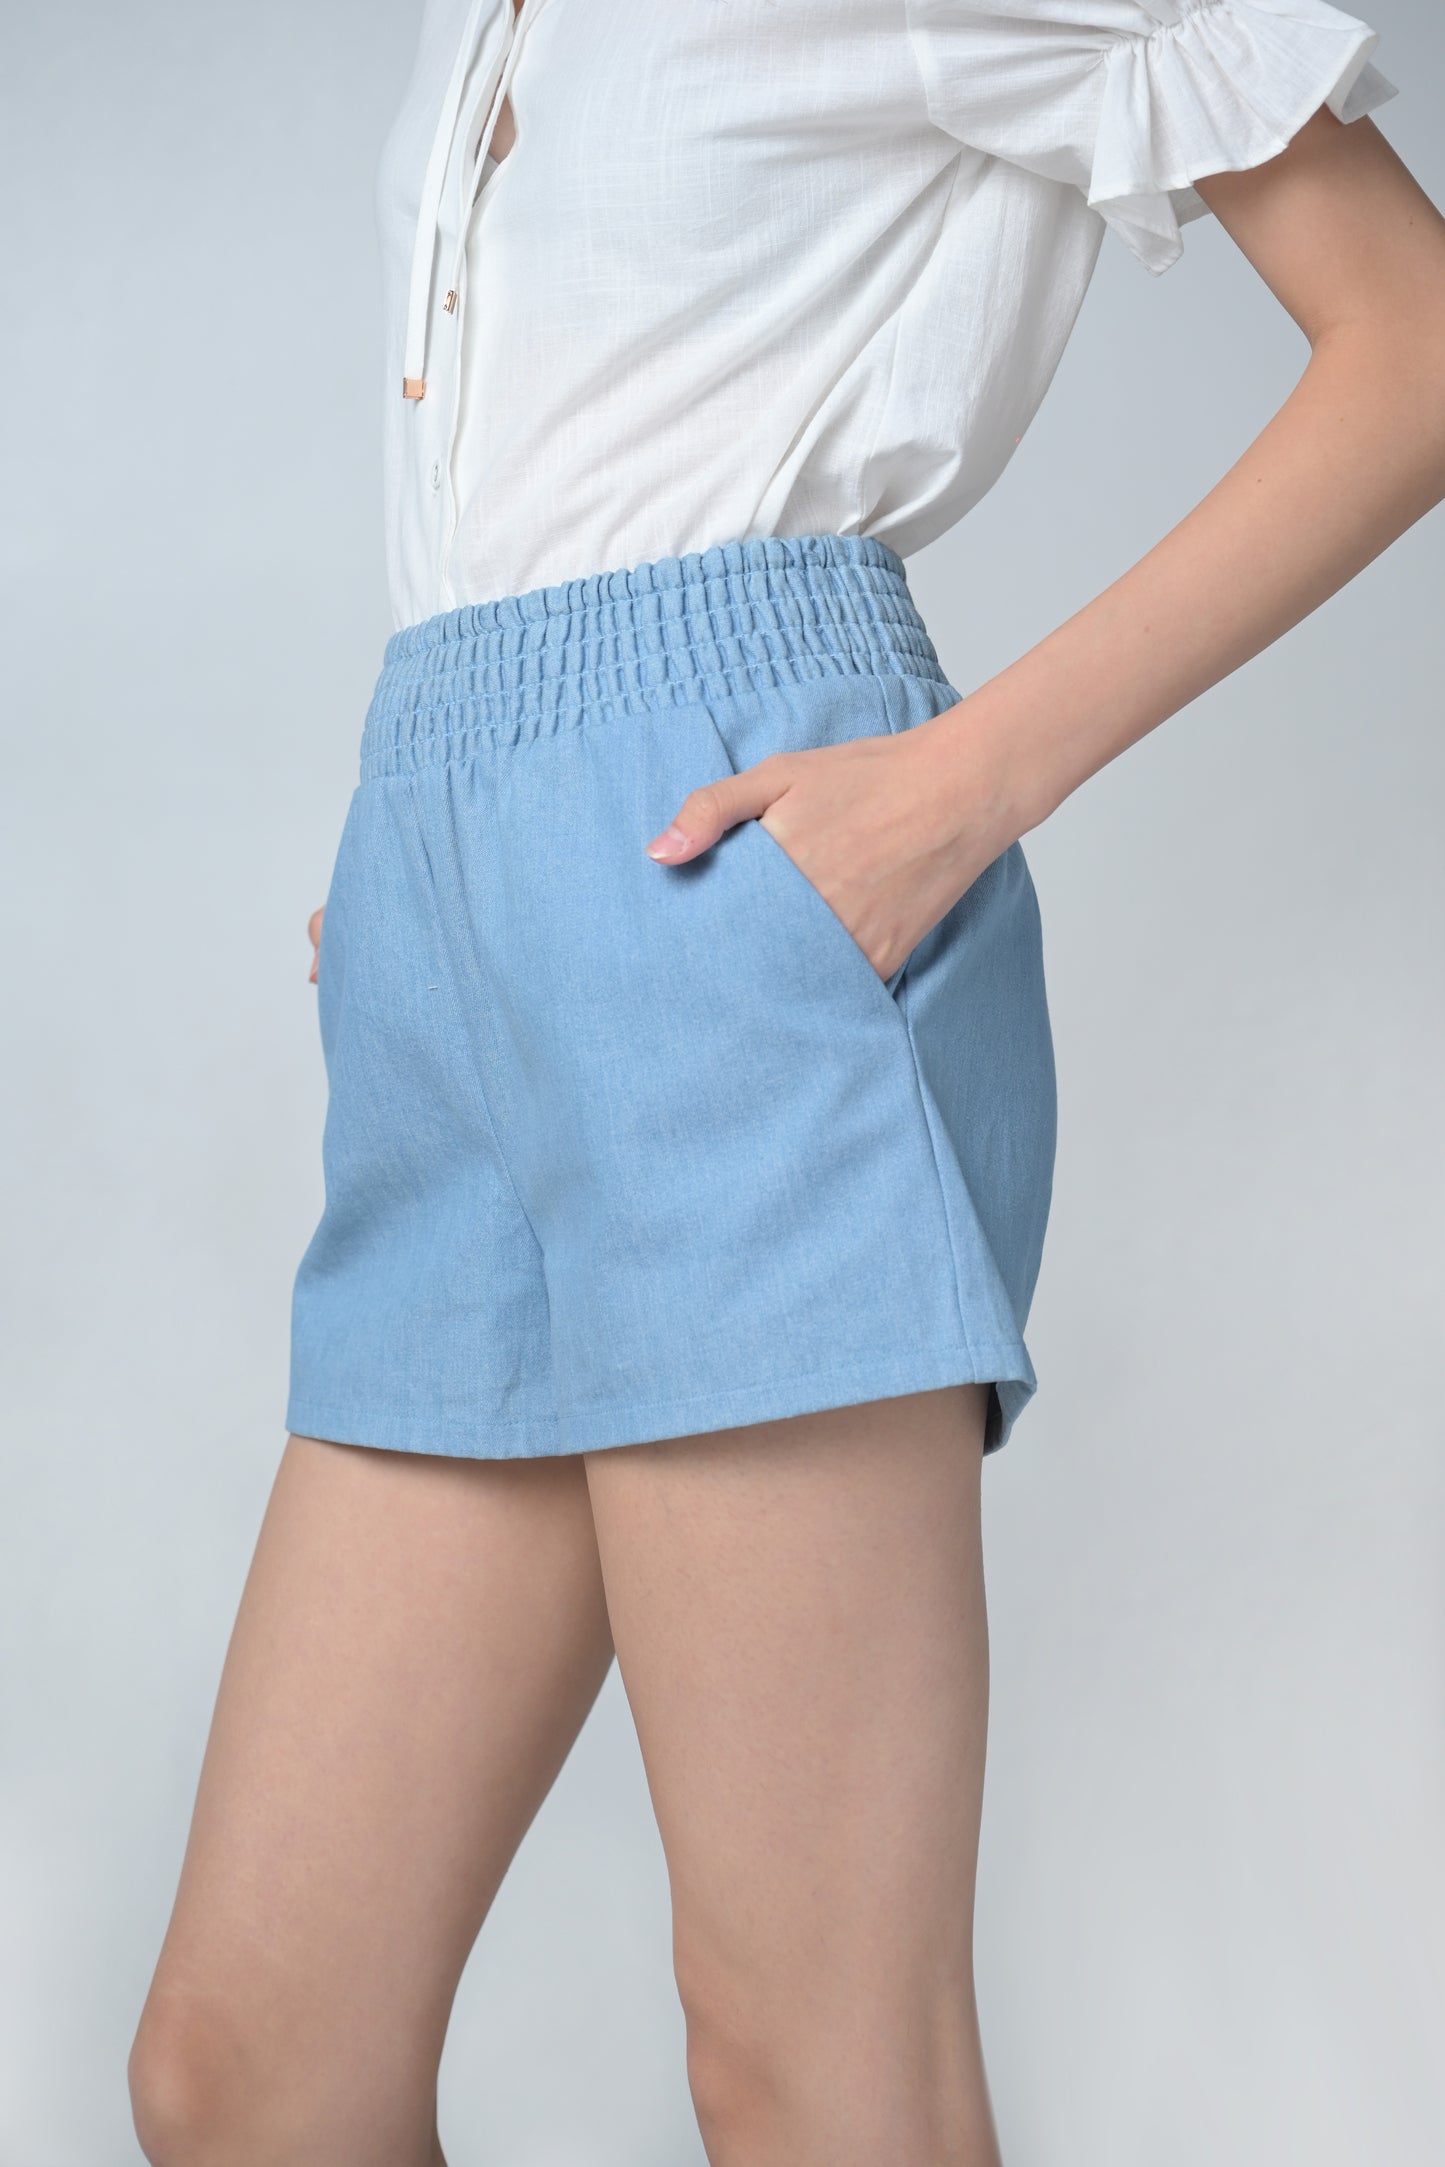 Bae Shorts (Chambray)